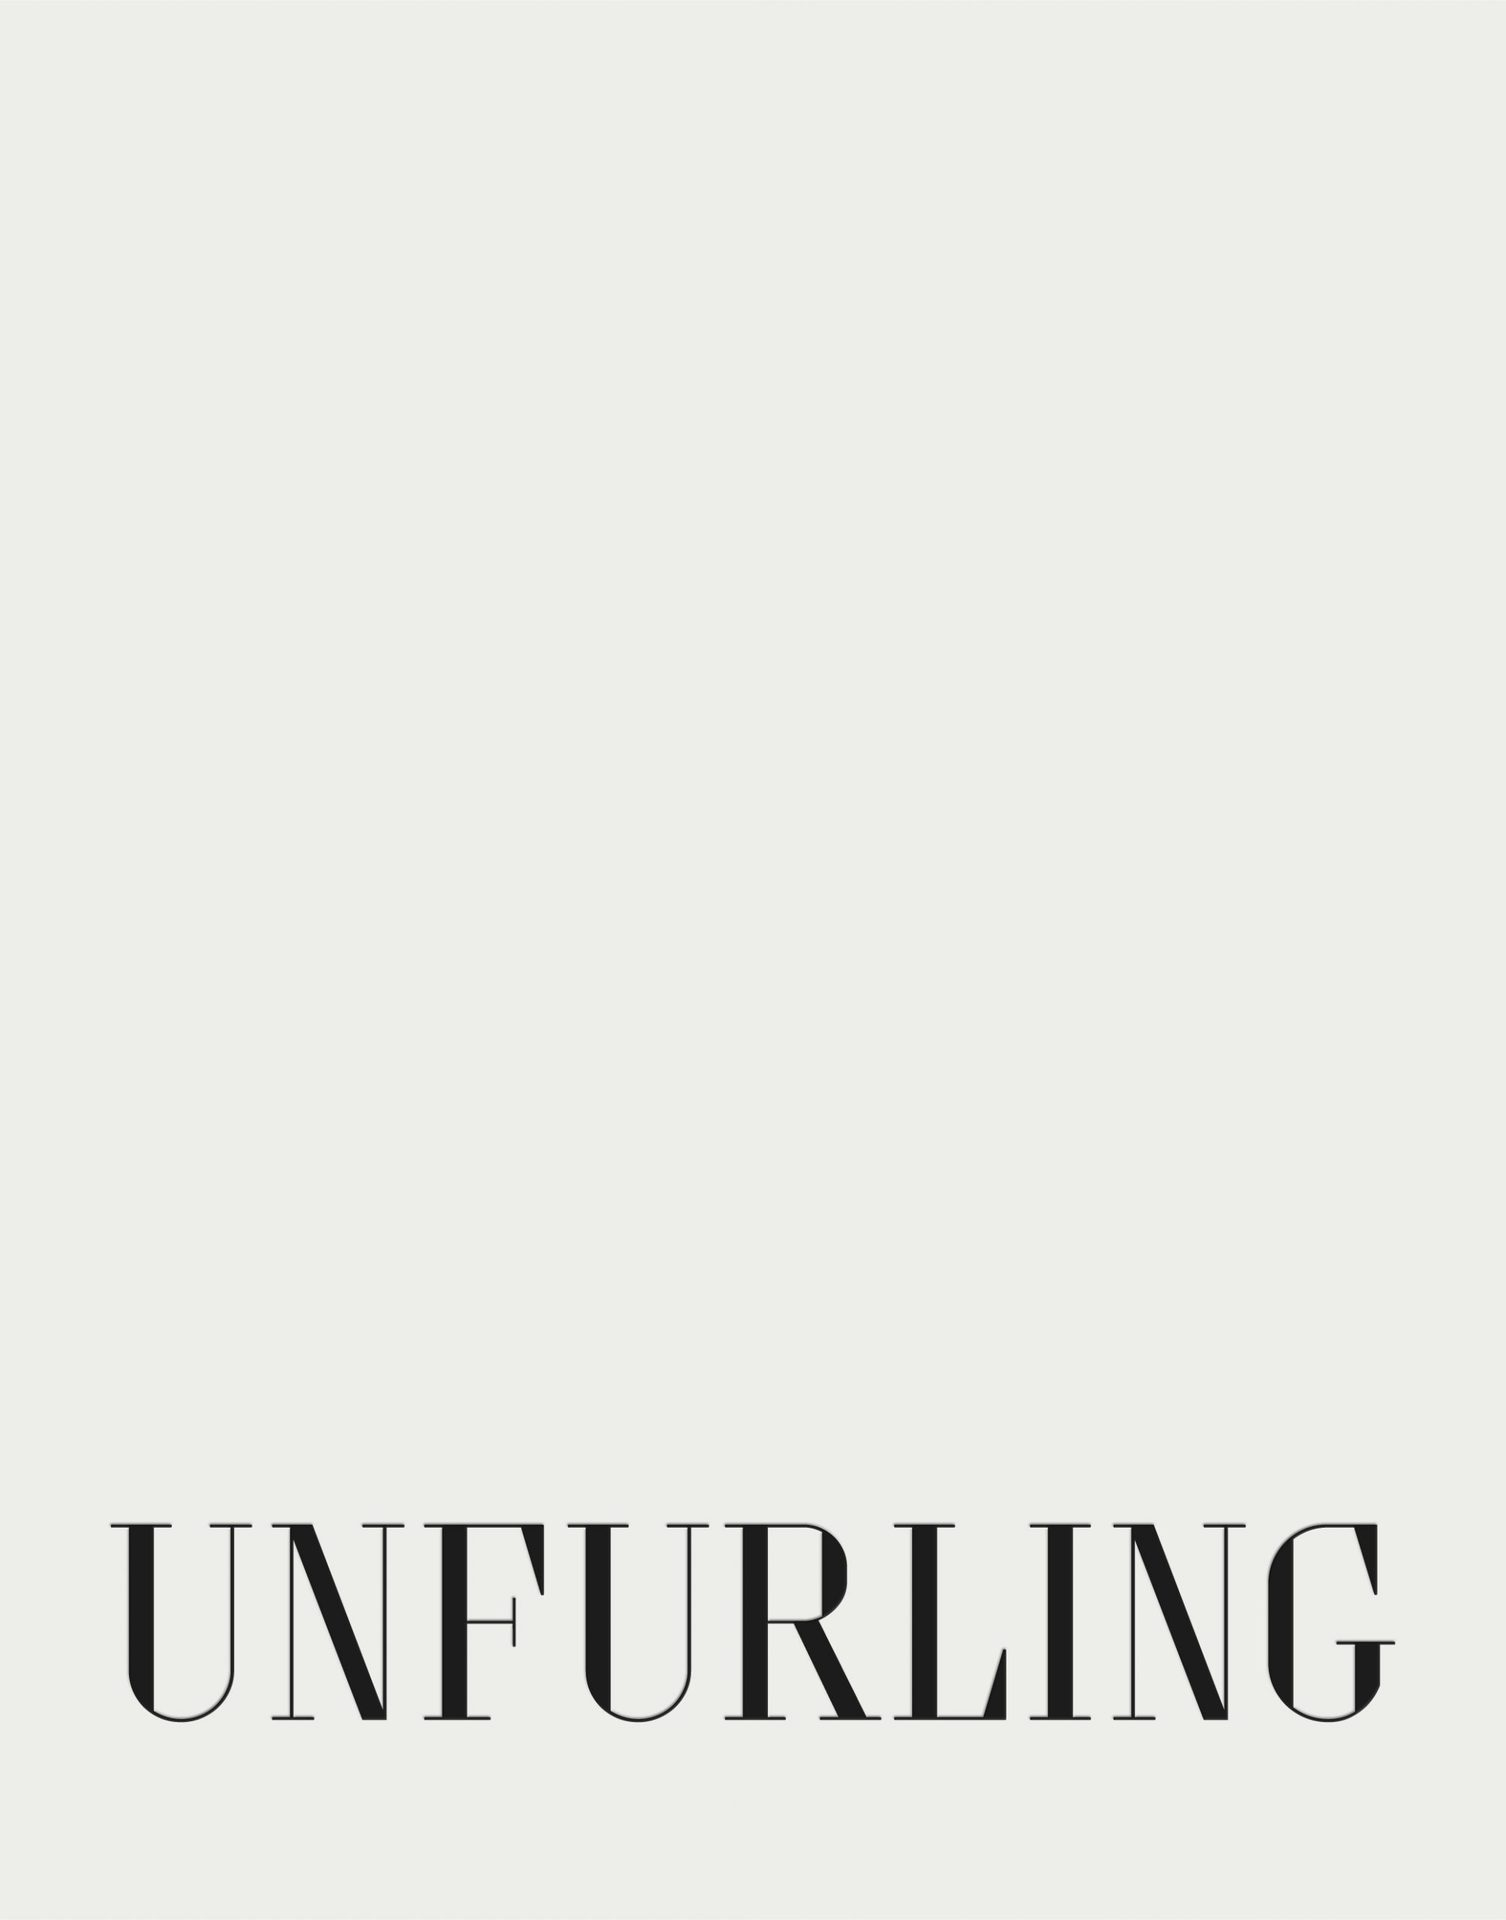 UNFURLING